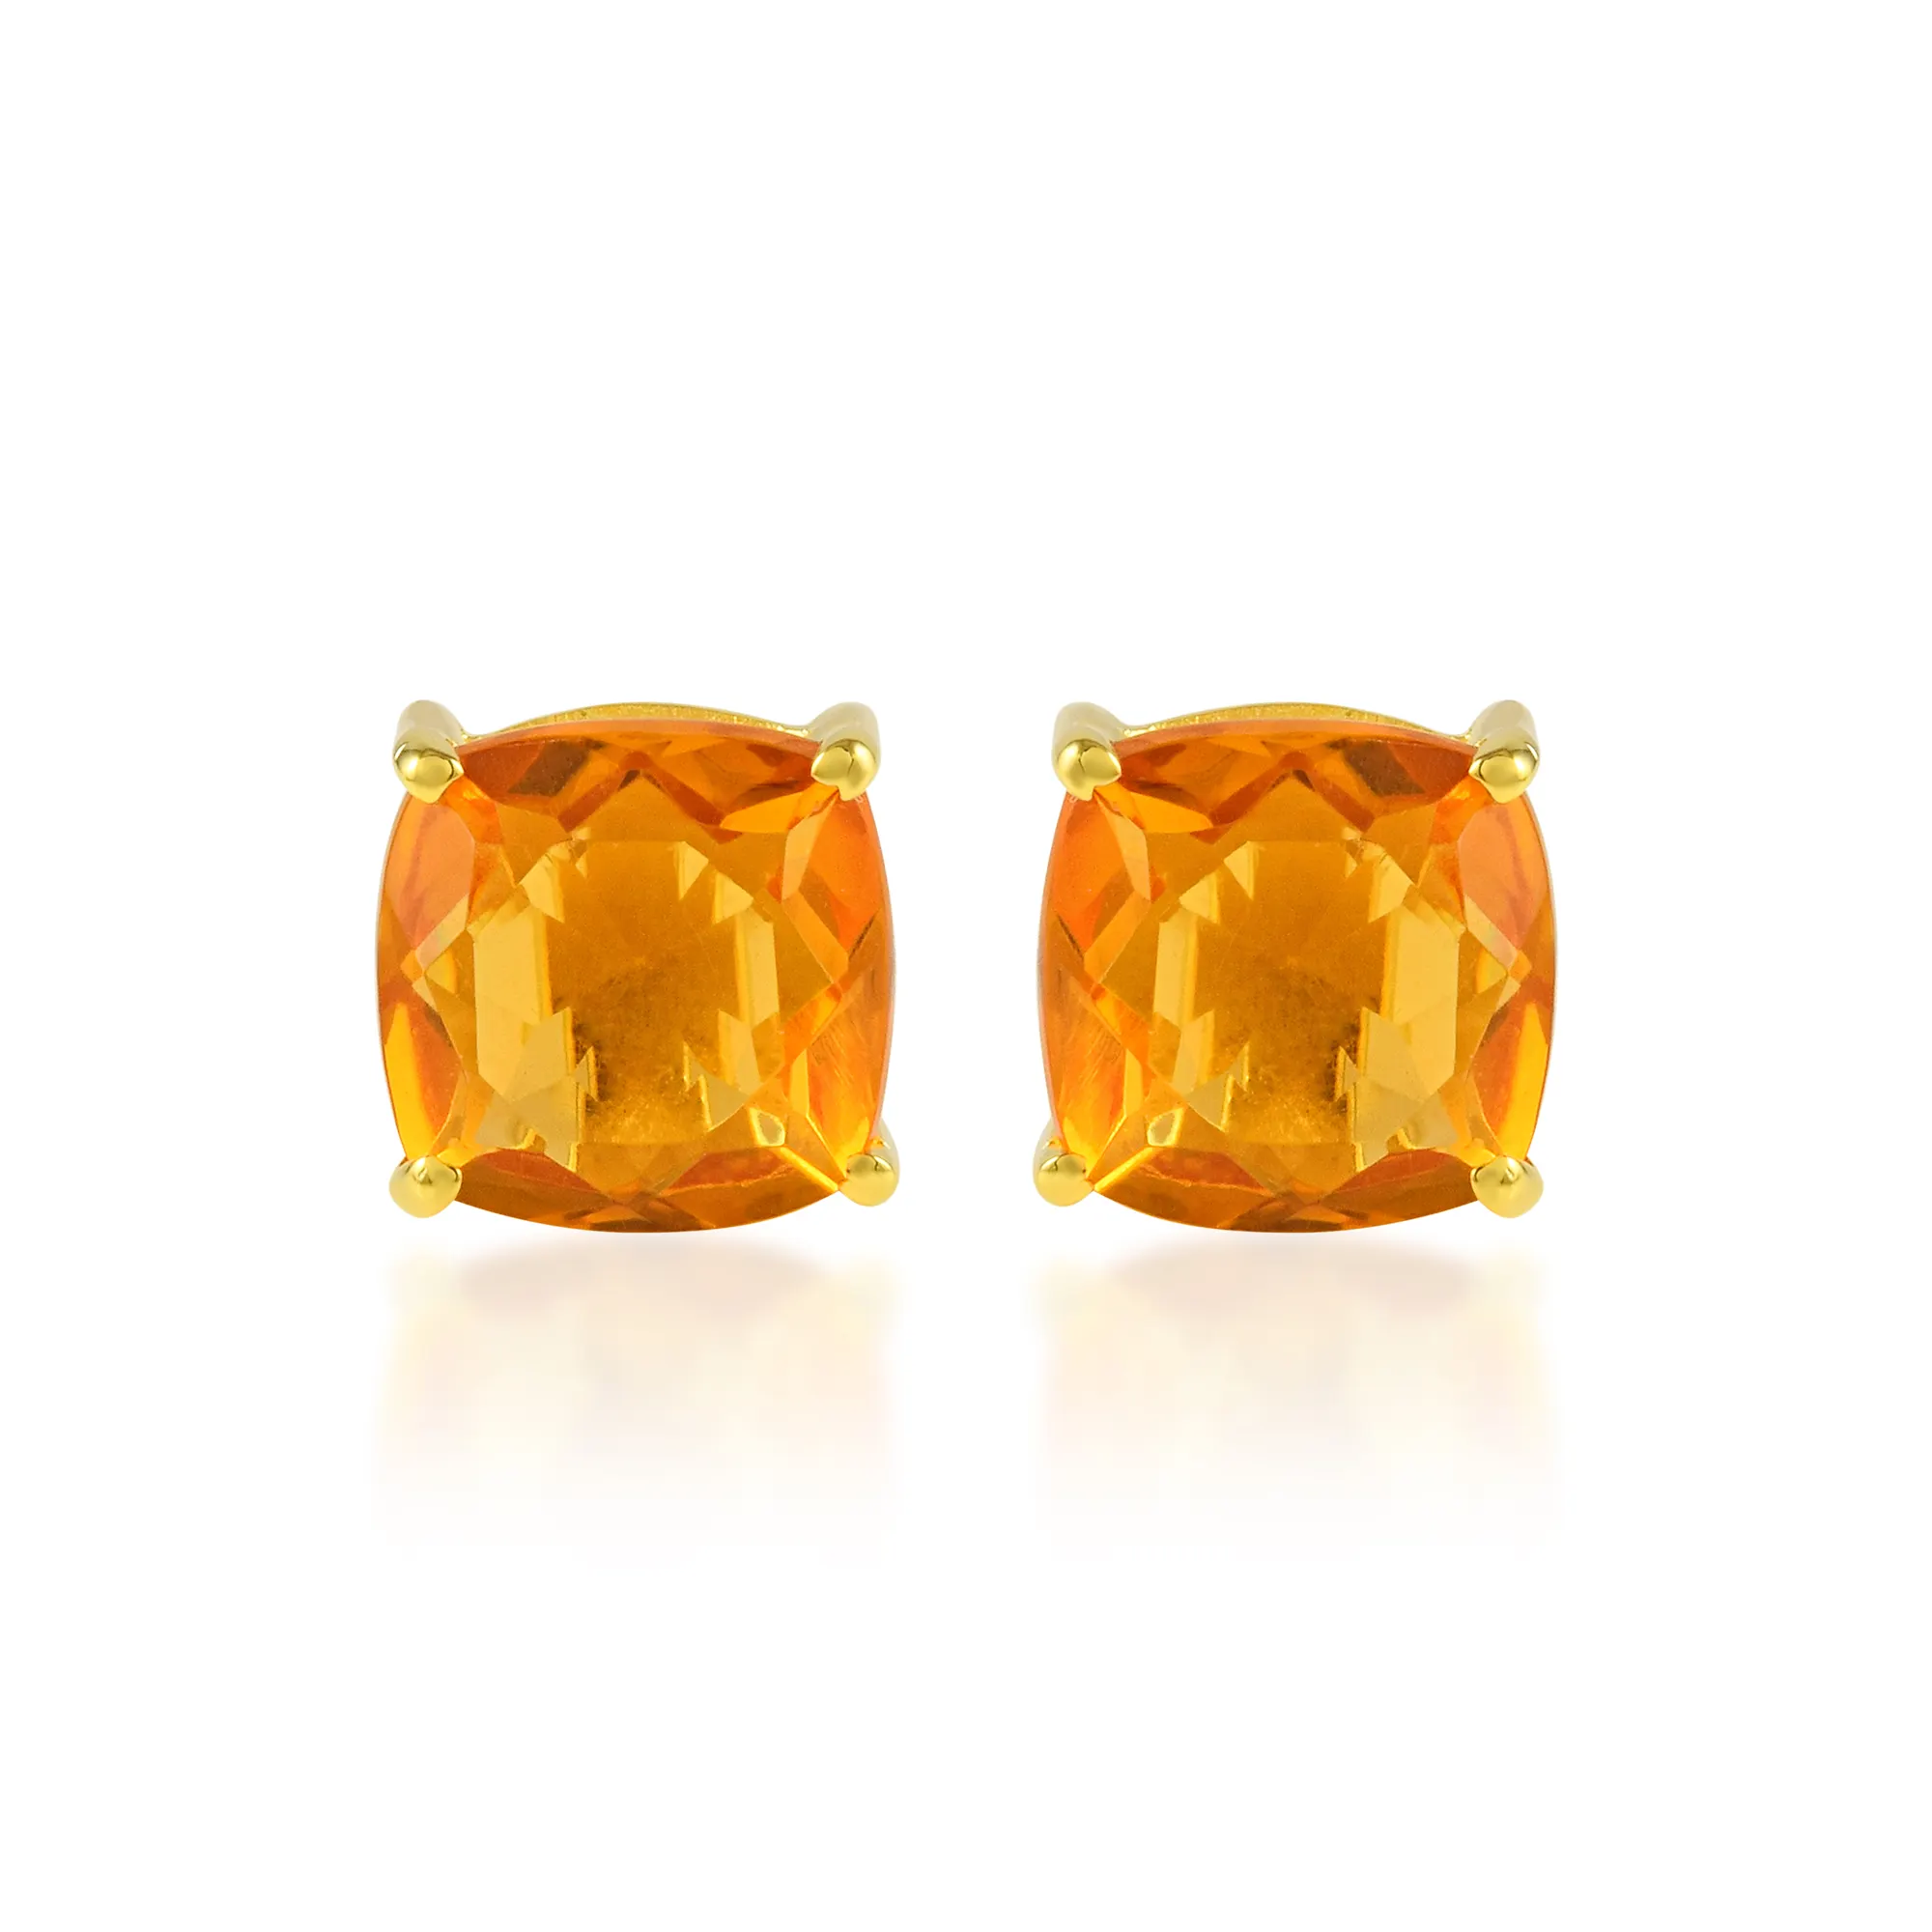 6mm Orange Swarovski Earrings Orange Crystal Earrings Sparkly Studs Dainty Earrings Hypoallergenic Studs Everyday Crys